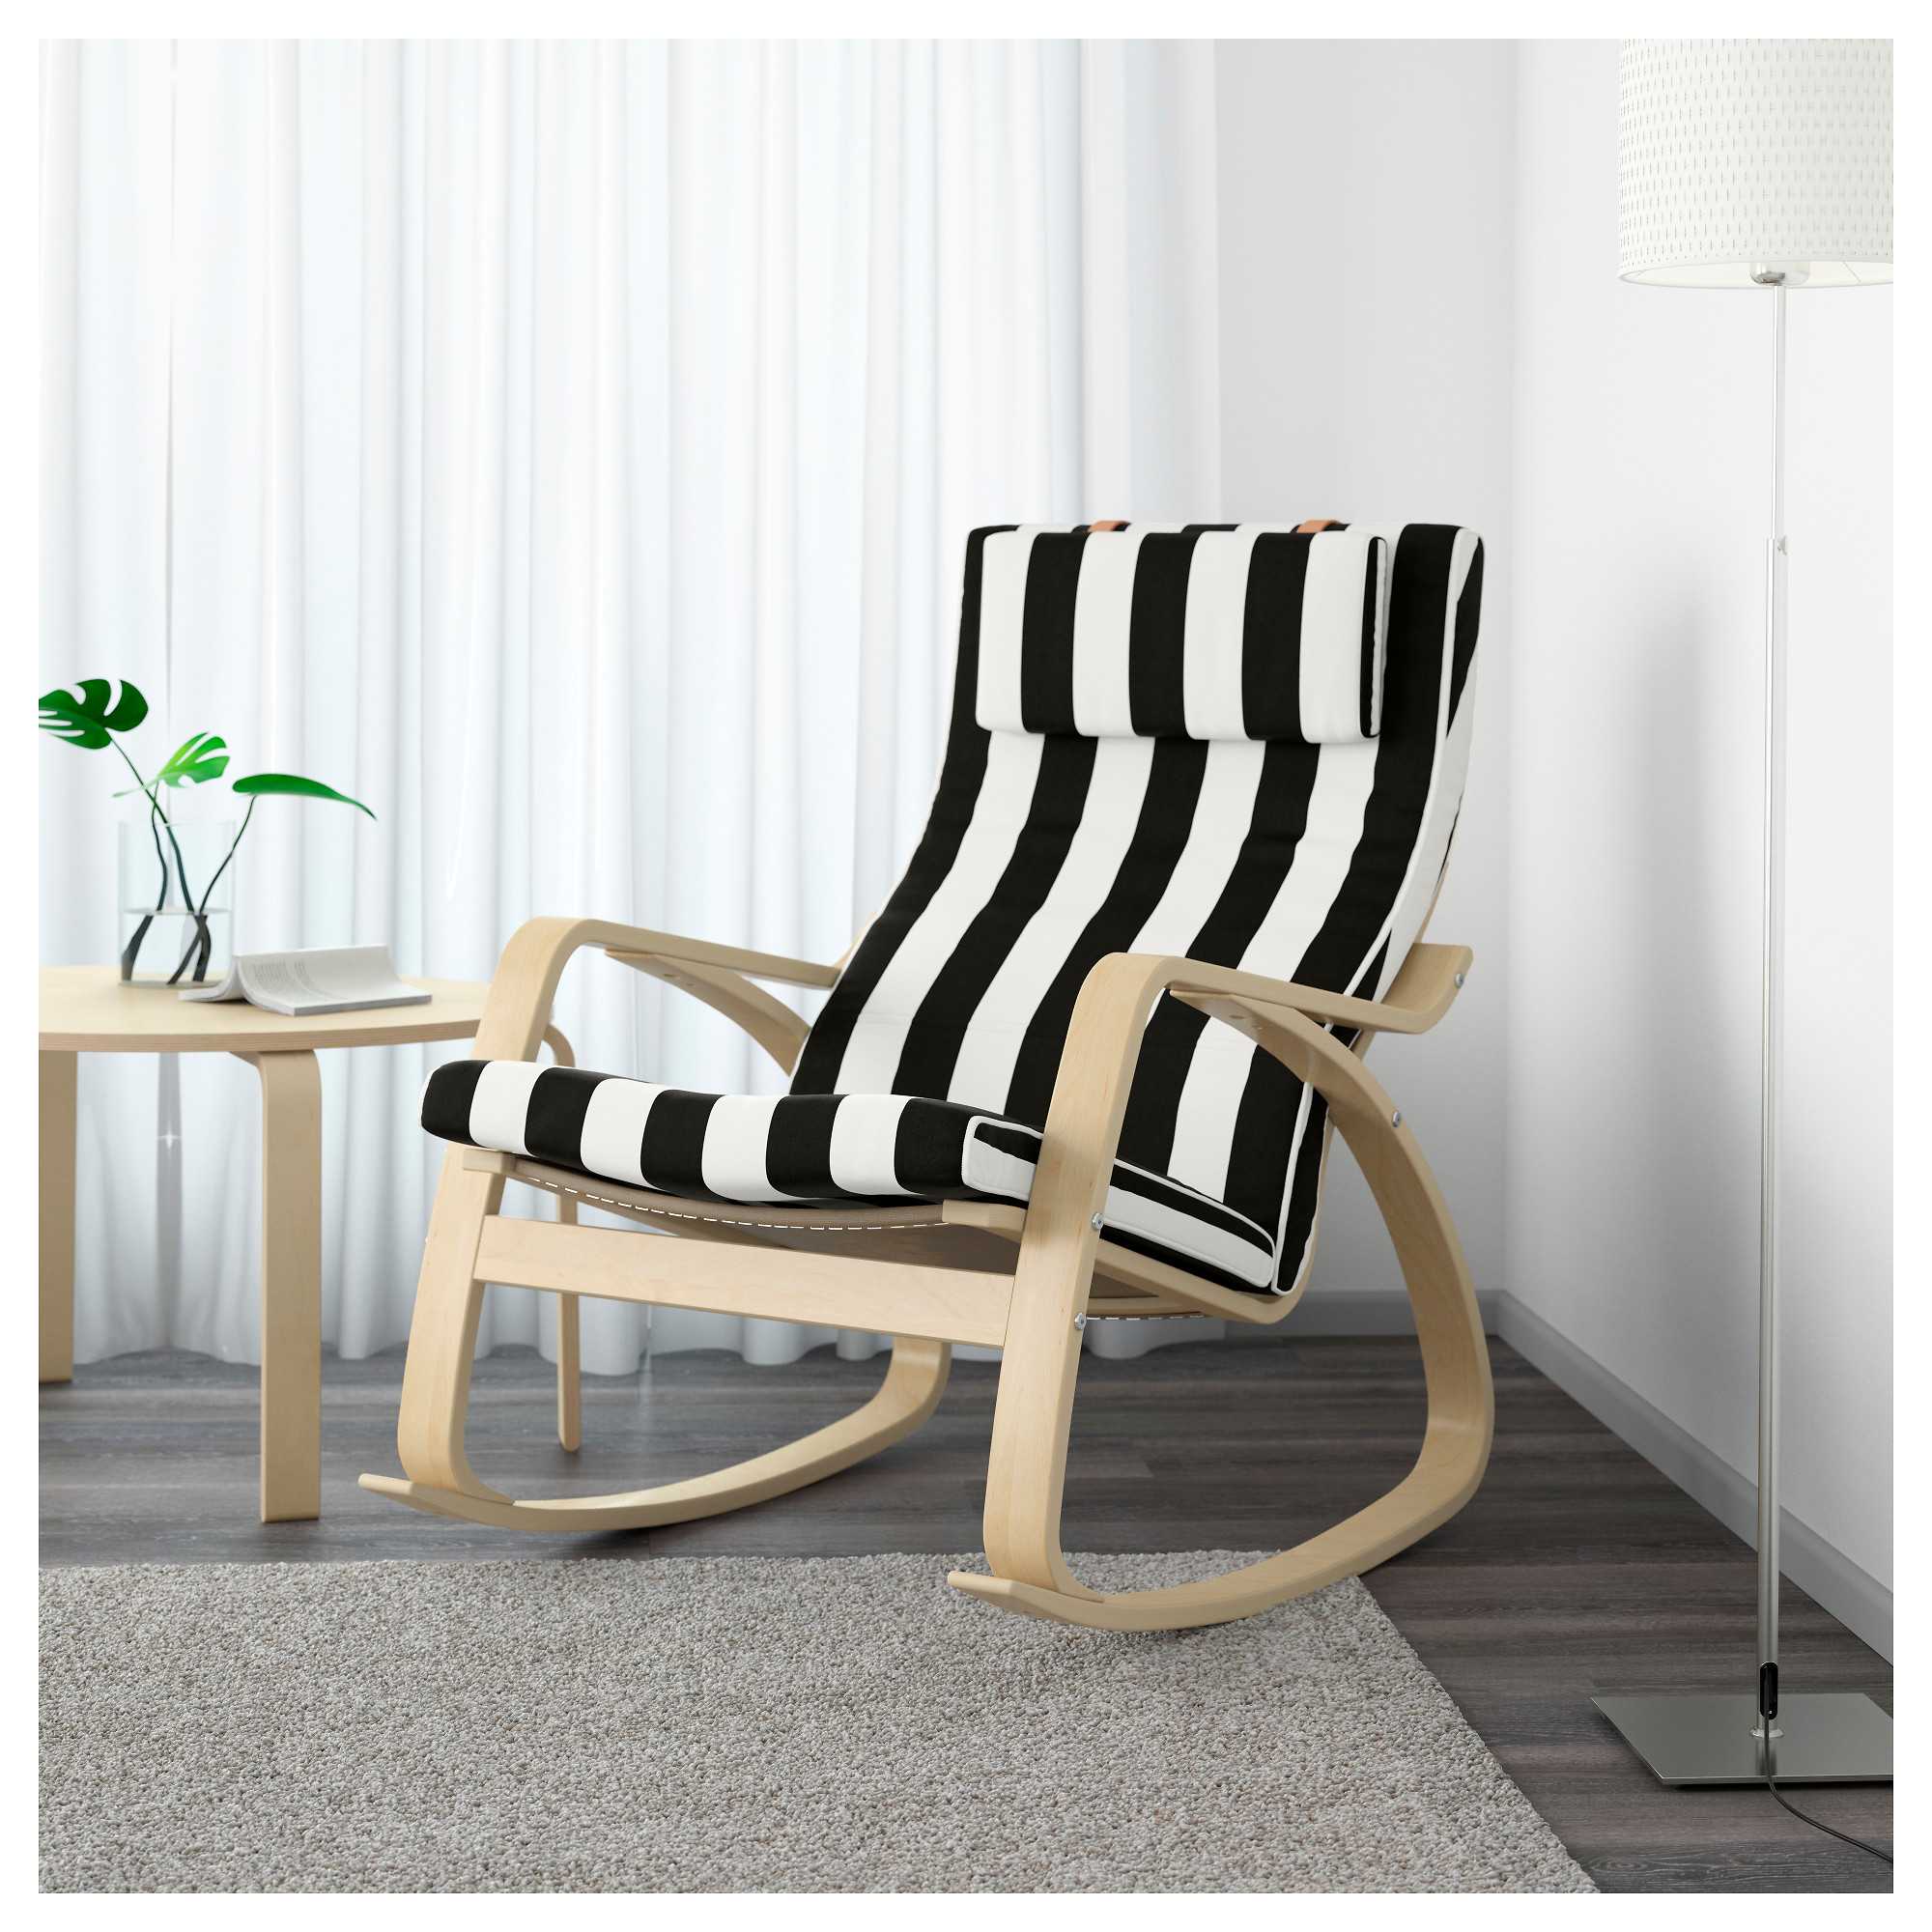 Чехол на кресло ikea: выбираем натяжные и другие модели. какая ткань лучше?